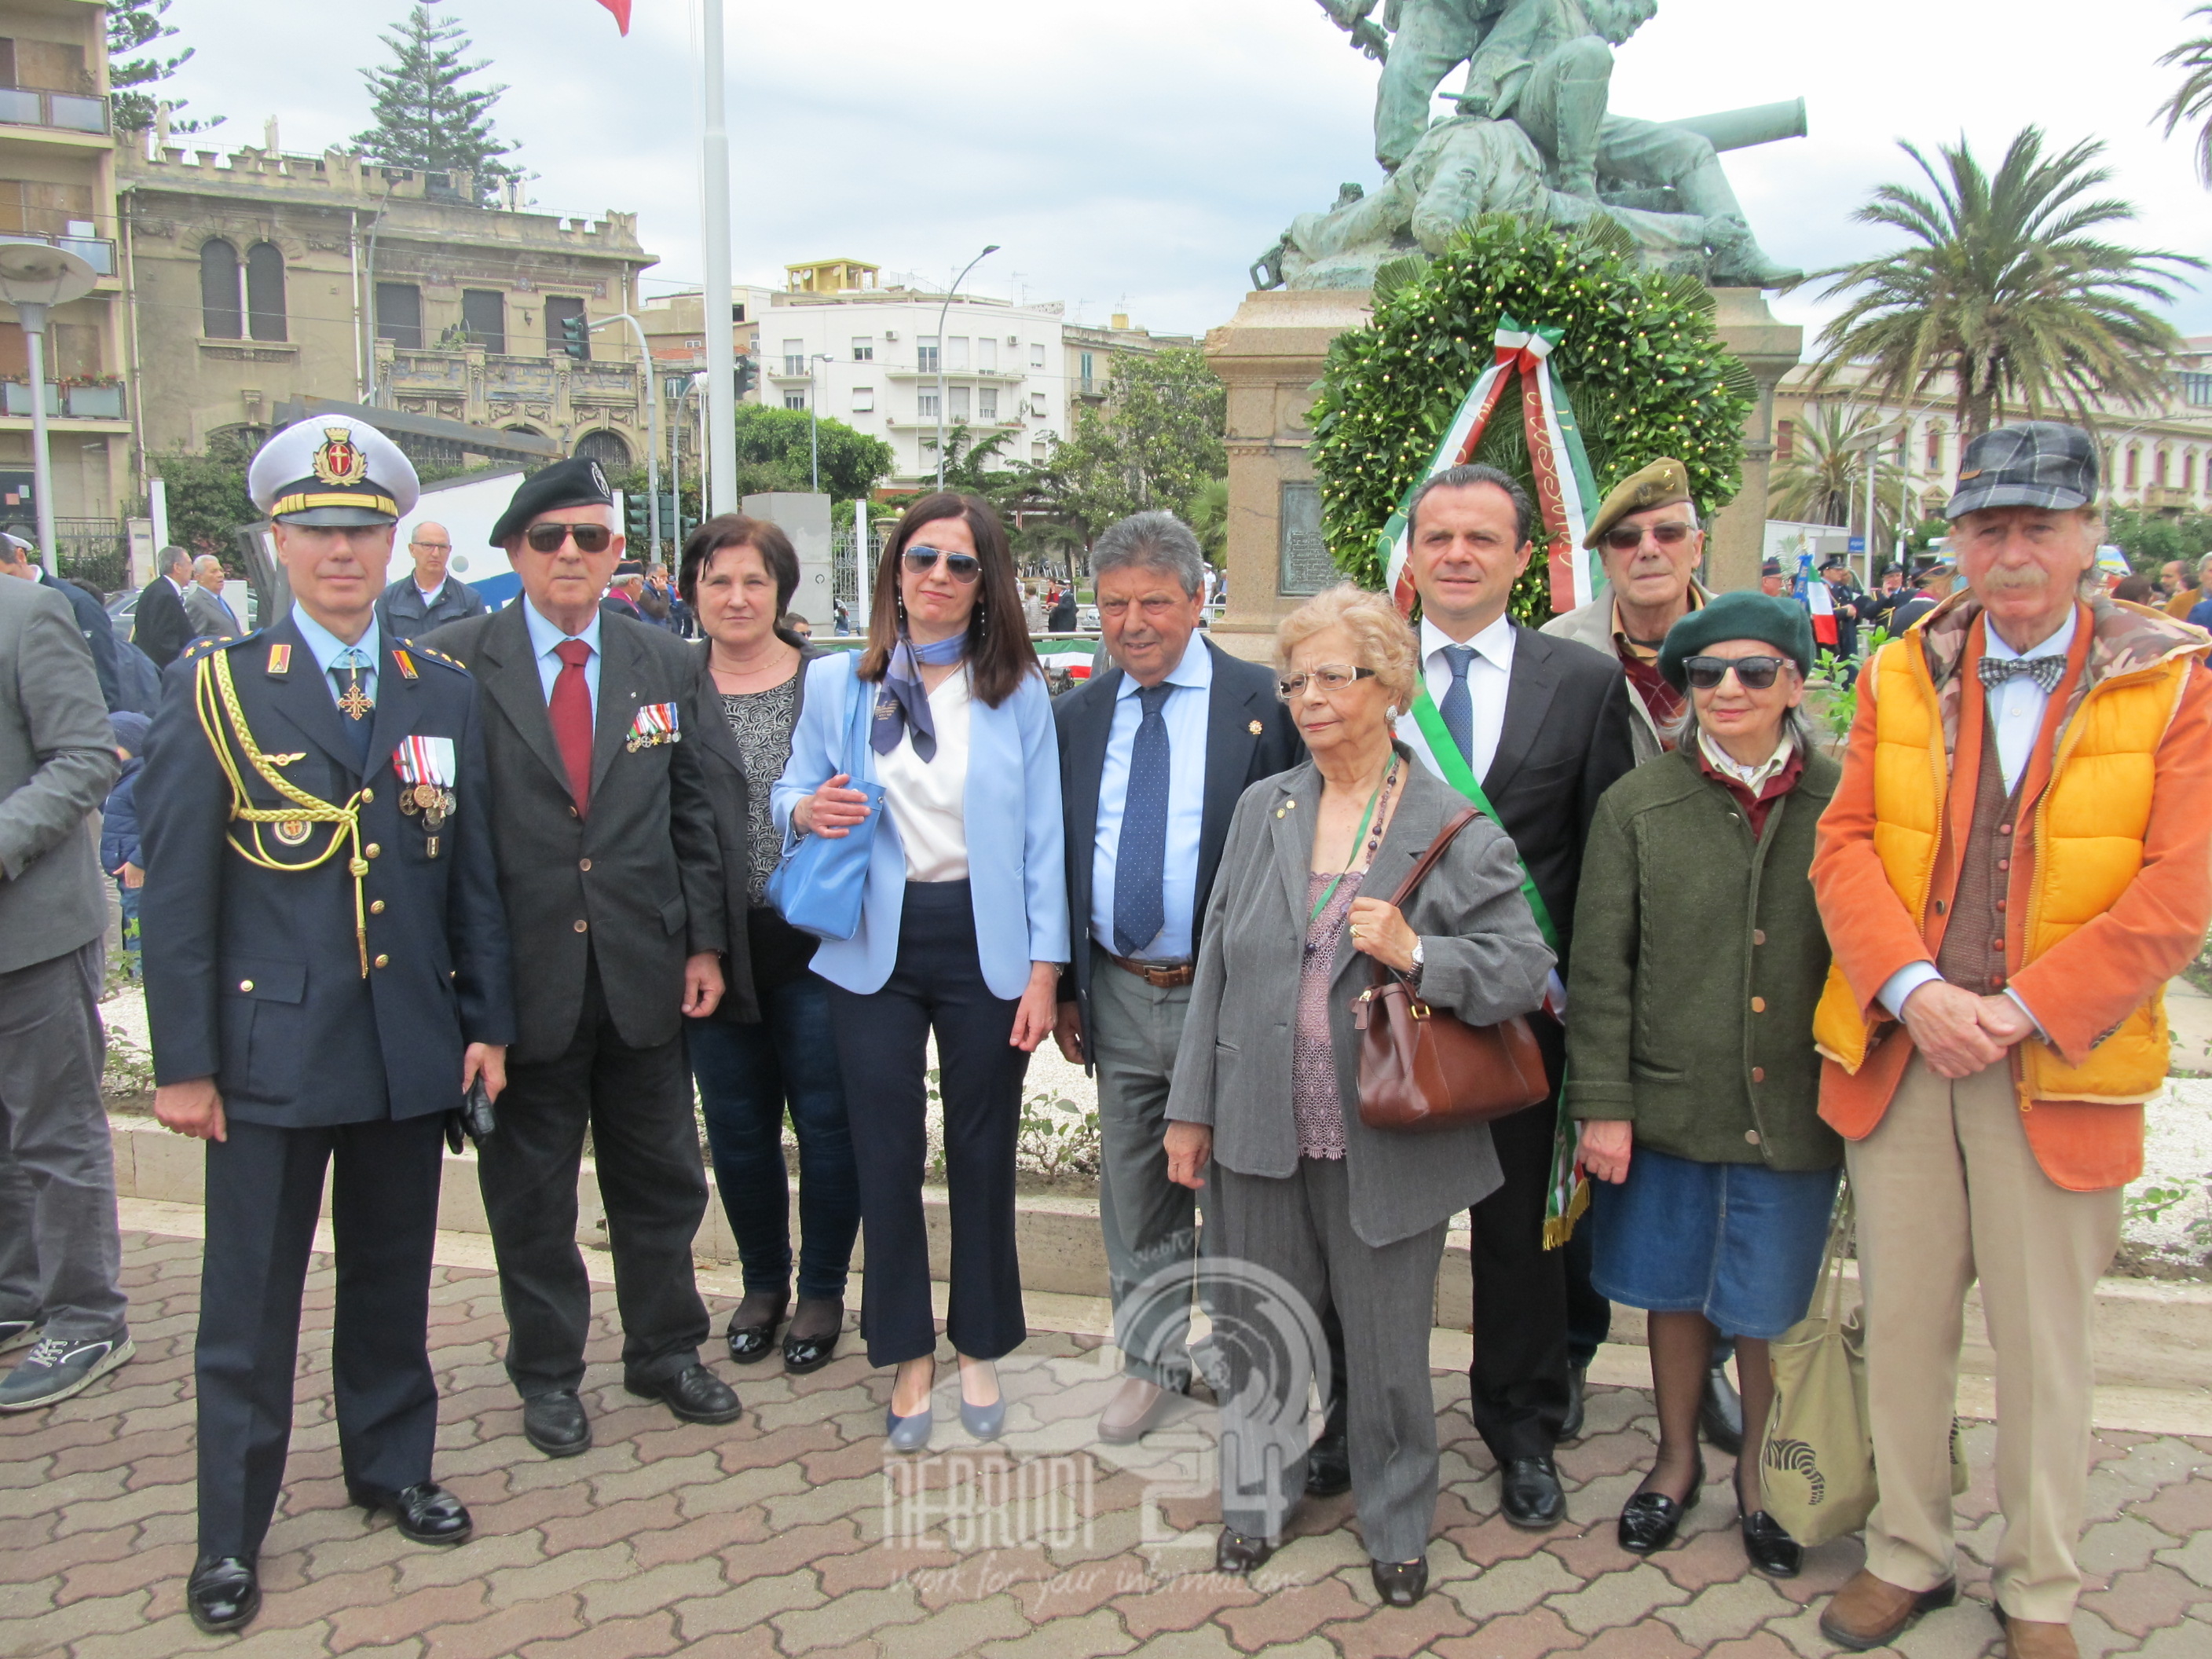 Messina – Celebrato il 73° anniversario della fondazione della Repubblica italiana.